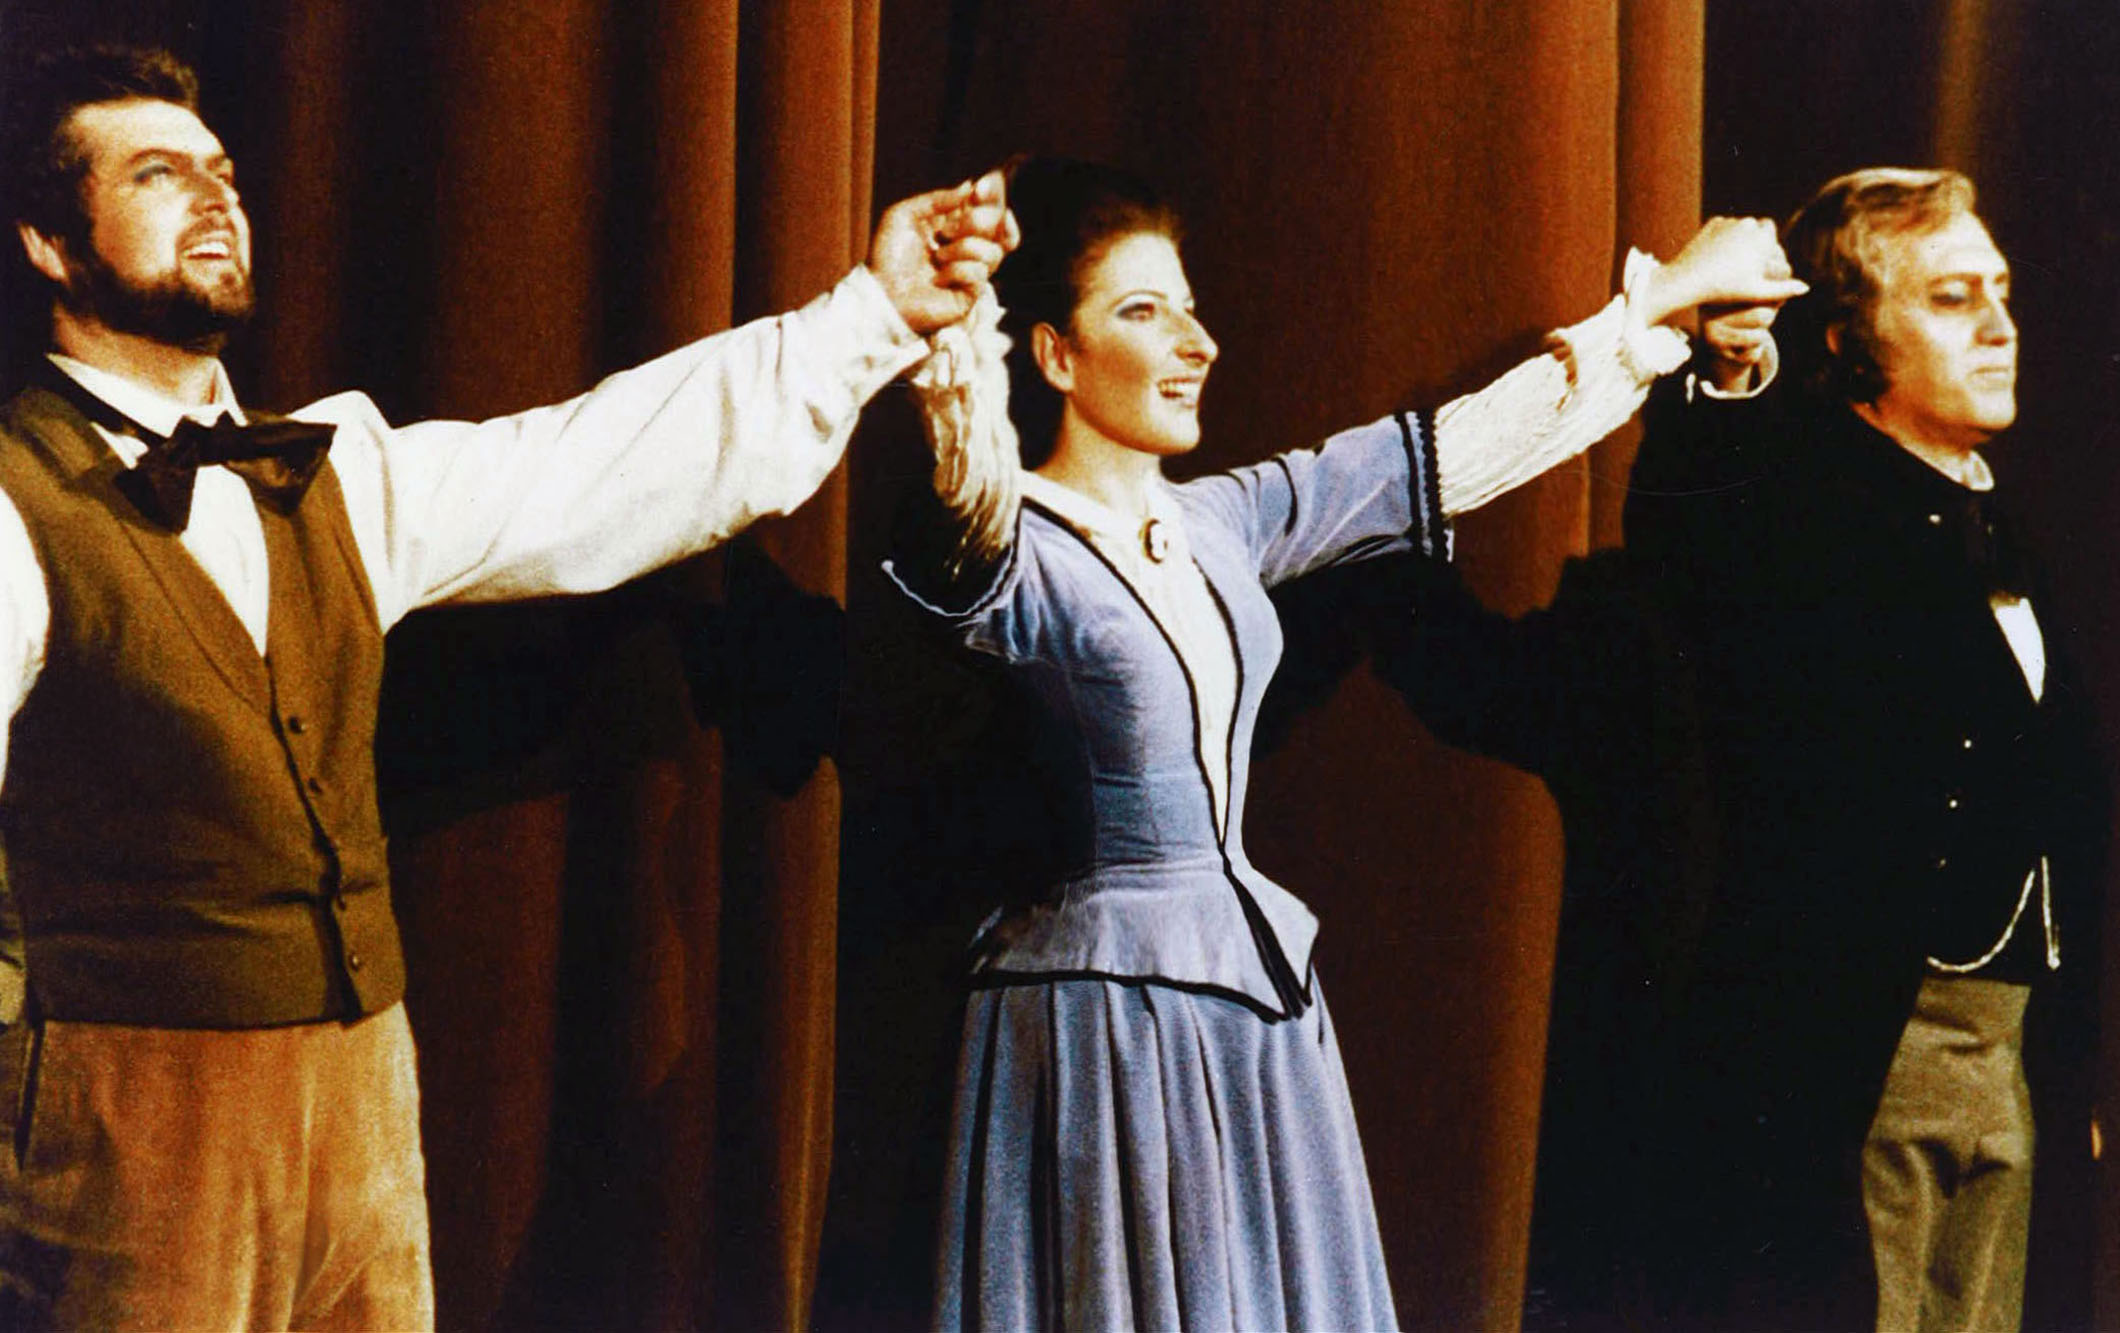 Lucia Aliberti with the tenor Peter Dvorsky and the baritone Piero Cappuccilli⚘Deutsche Oper Berlin⚘Berlin⚘Opera⚘"La Traviata"⚘On Stage⚘Photo taken from the TV News⚘TV Portrait⚘:http://www.luciaaliberti.it #luciaaliberti #peterdvorsky #pierocappuccilli #deutscheoperberlin #berlin #latraviata #opera #onstage #tvnews #tvportrait